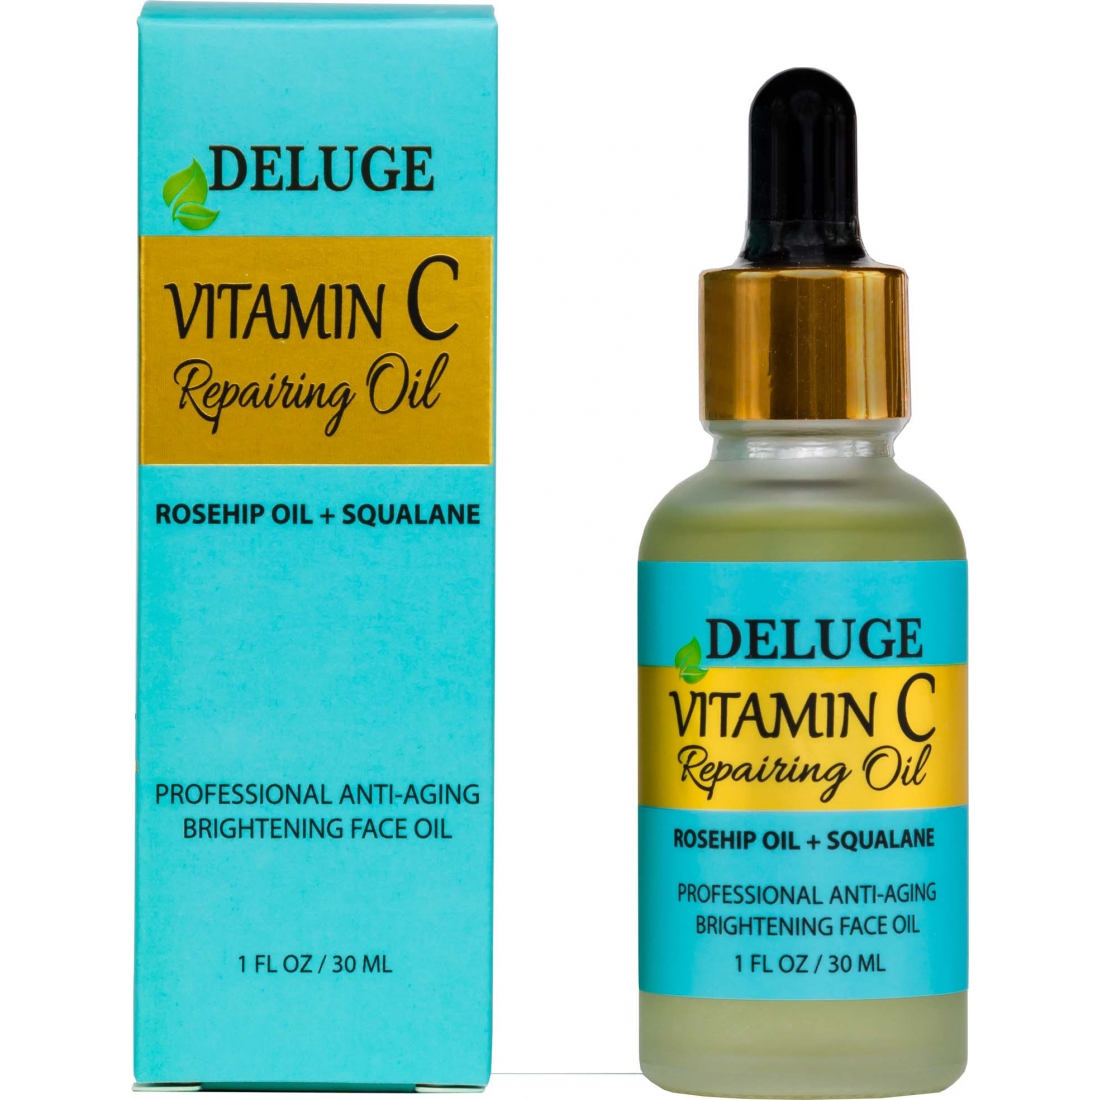 'Vitamin C Repairing' Oil